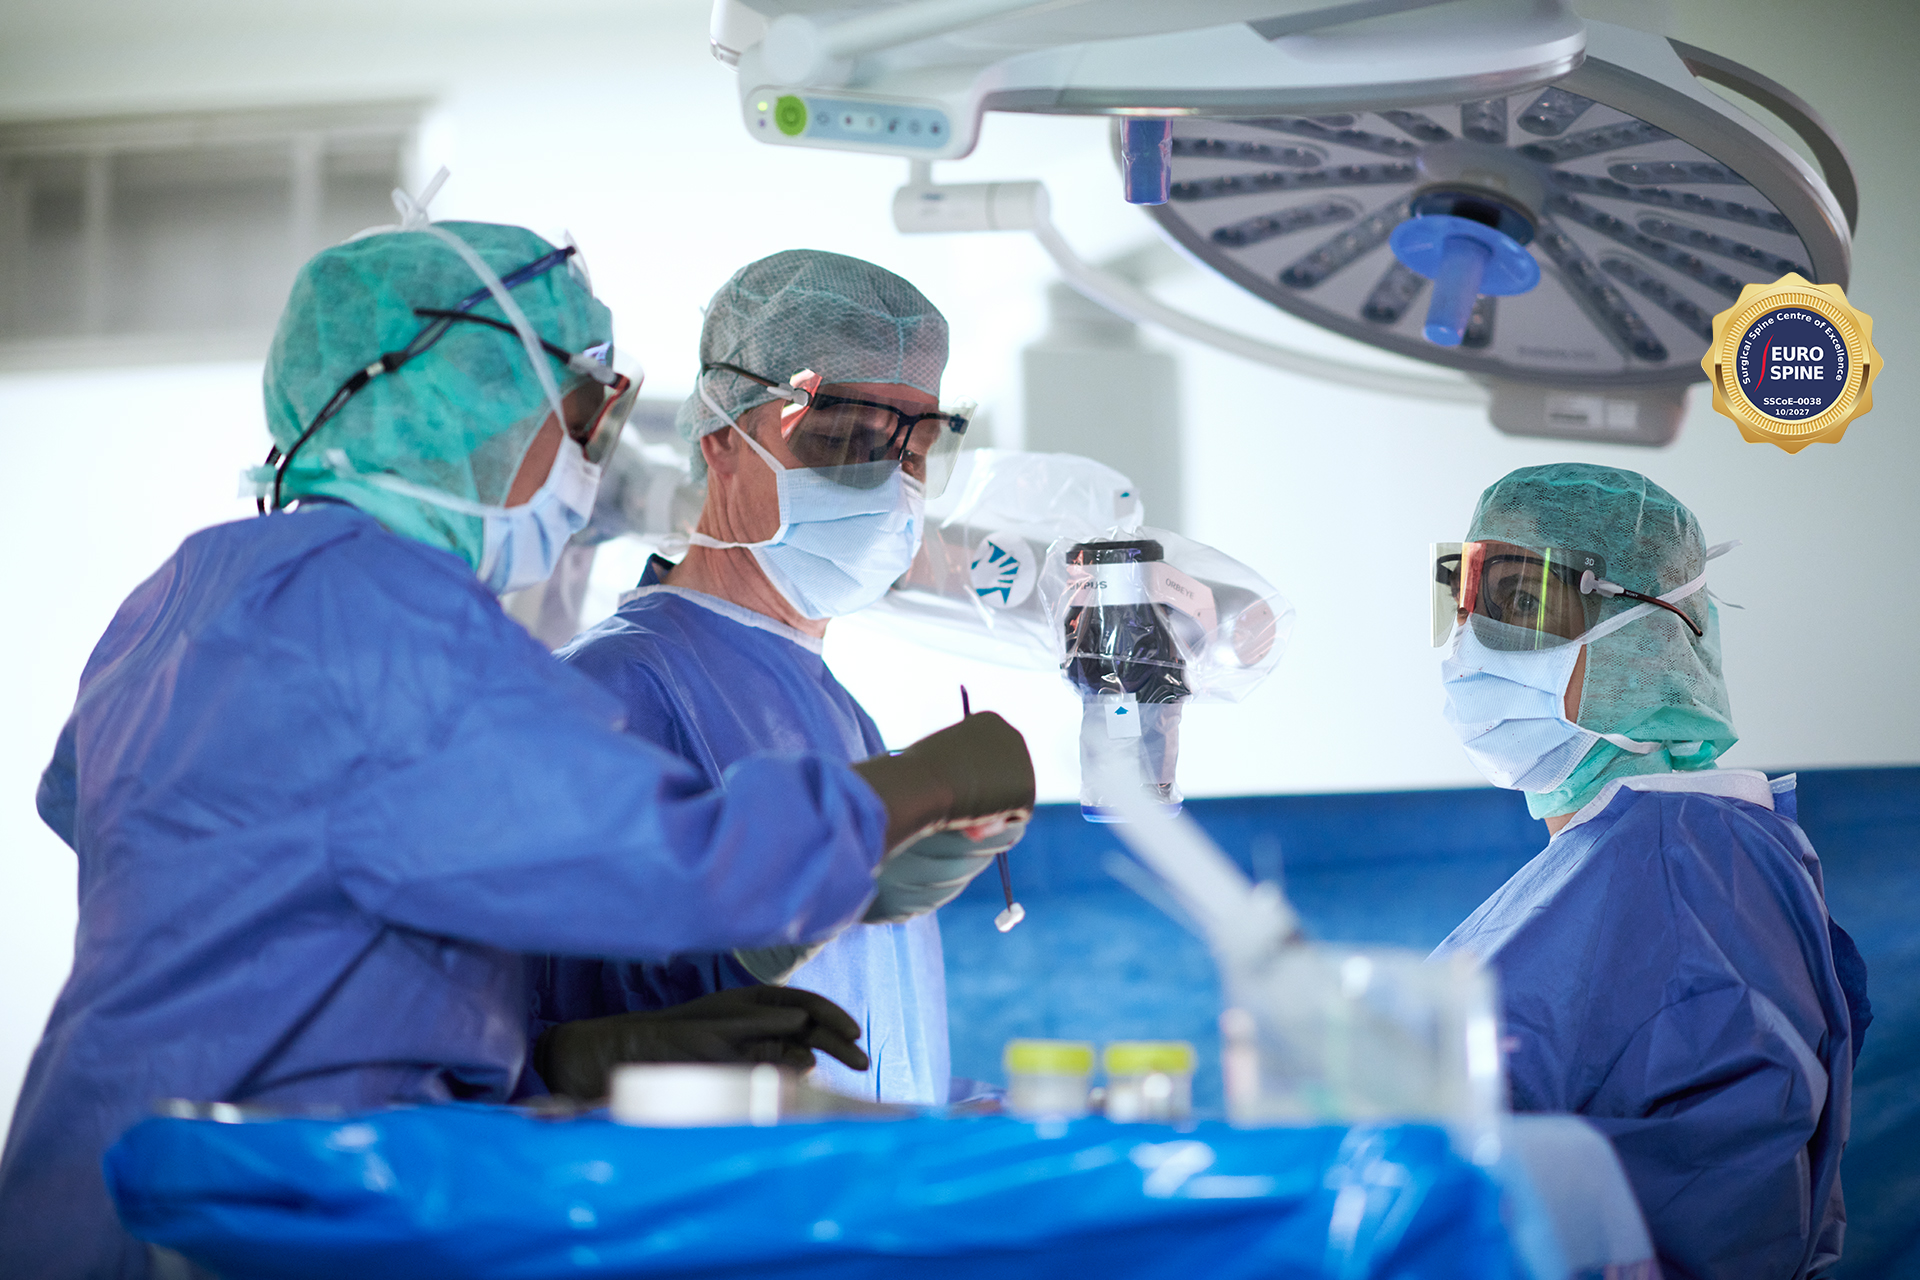 Prof. Stefan Schären und andere Chirurgen während eines Eingriffs im OP-Saal